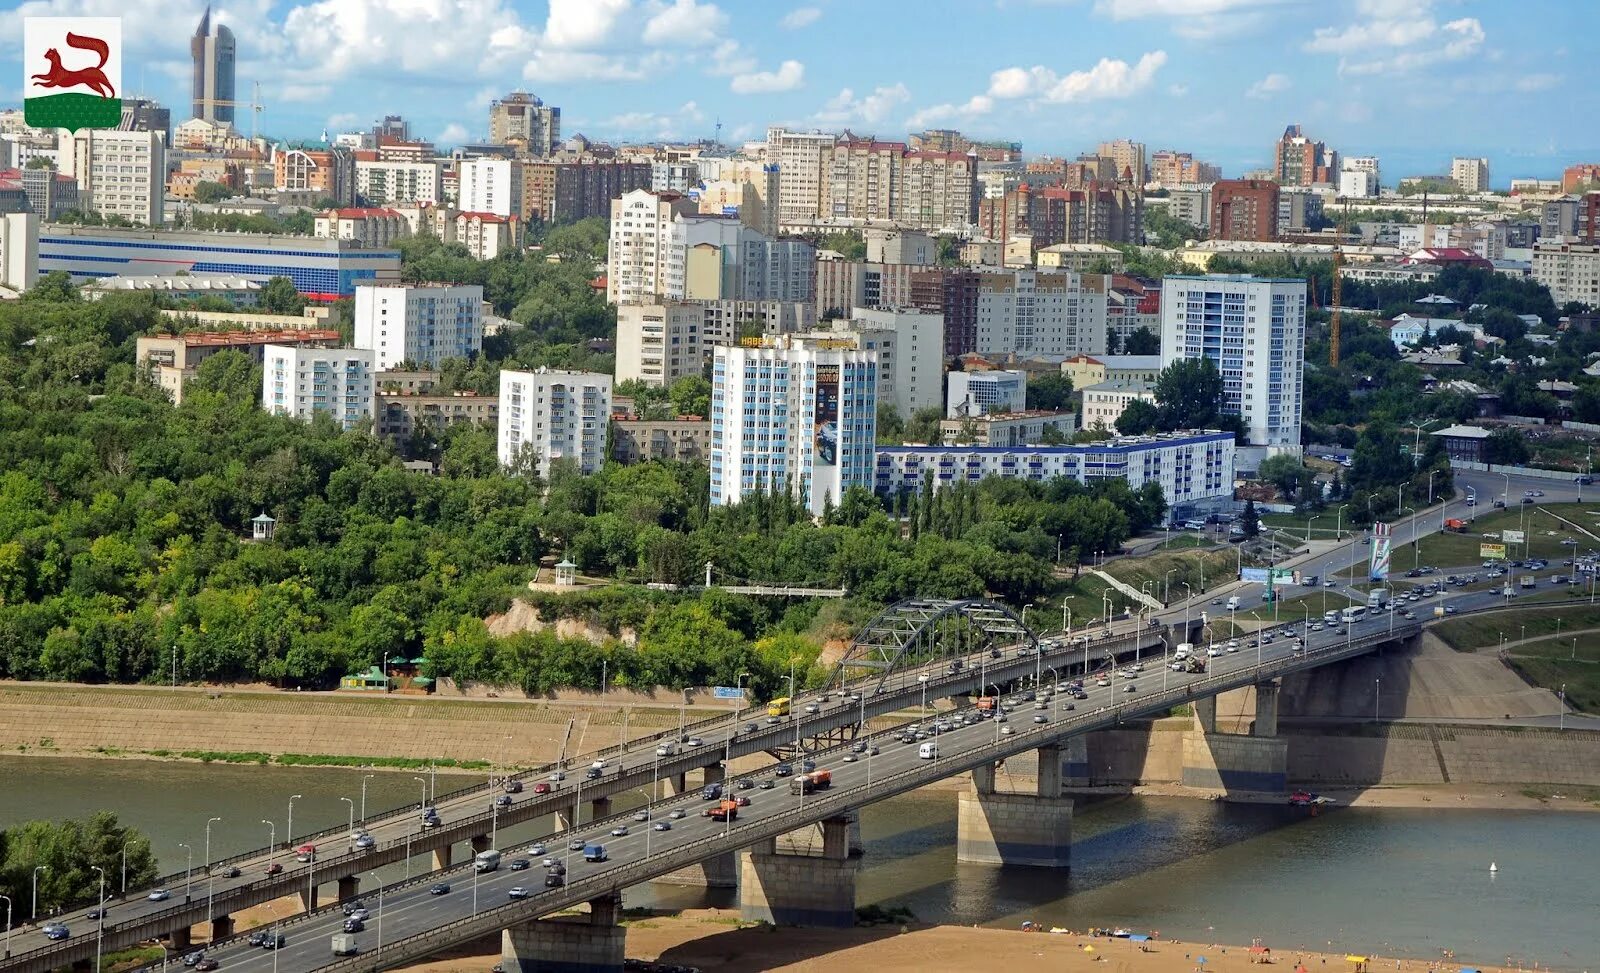 Уфа (город). Город Уфа в 2012 году. Население города Уфа. Уфа панорама города.